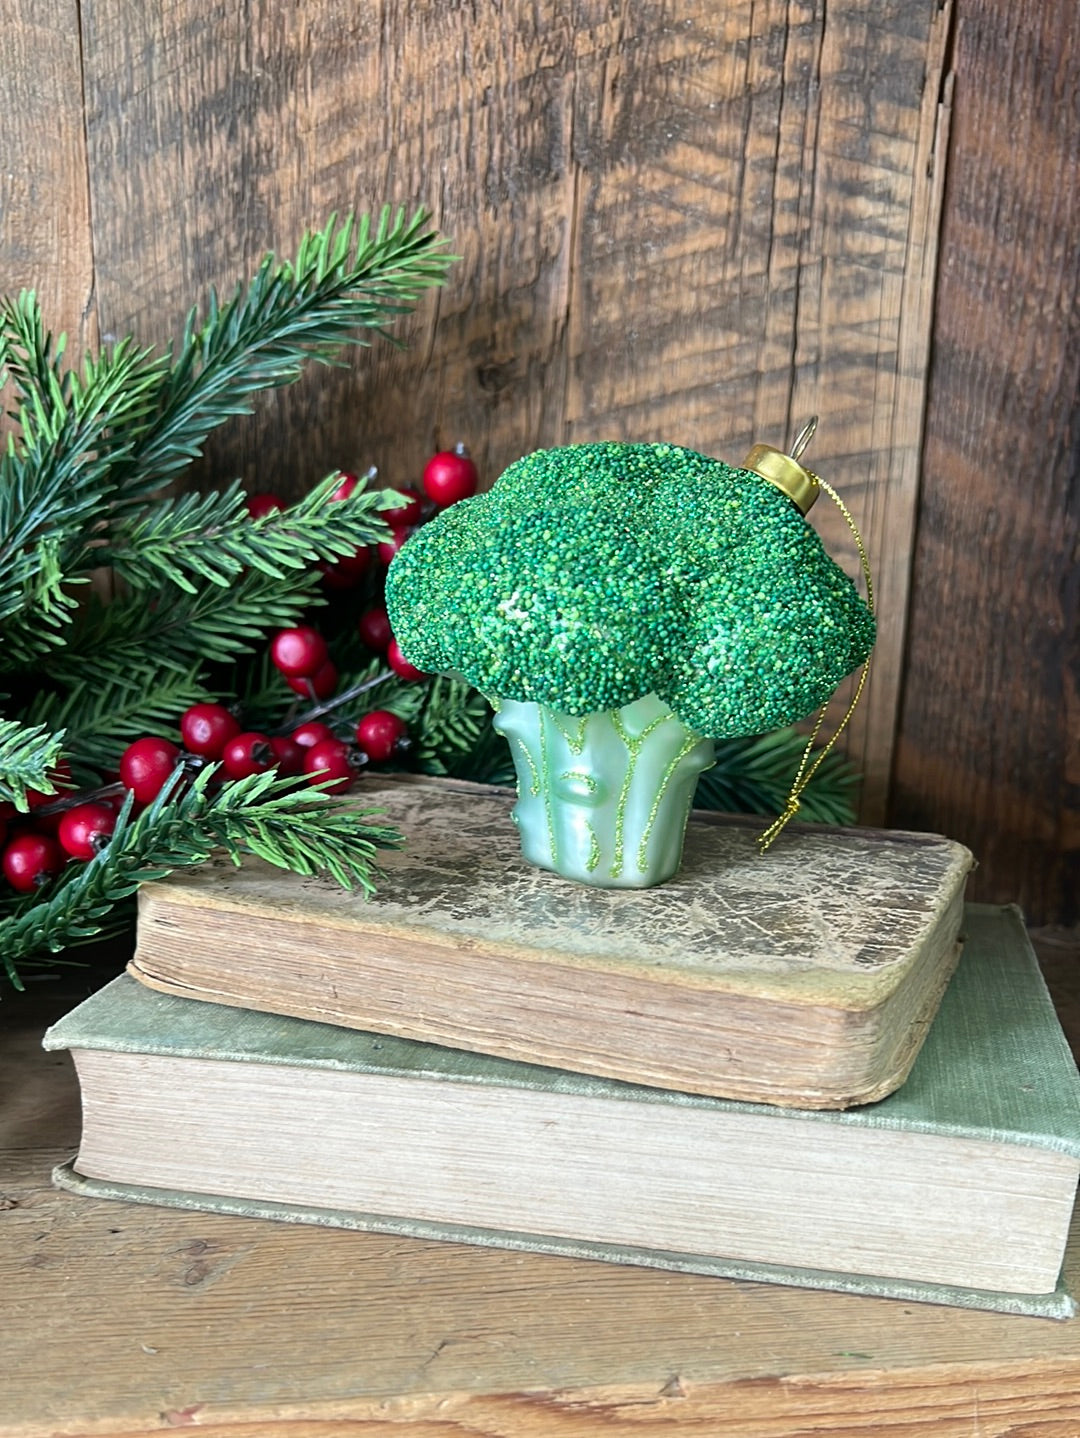 Broccoli Glass and Glitter Ornament